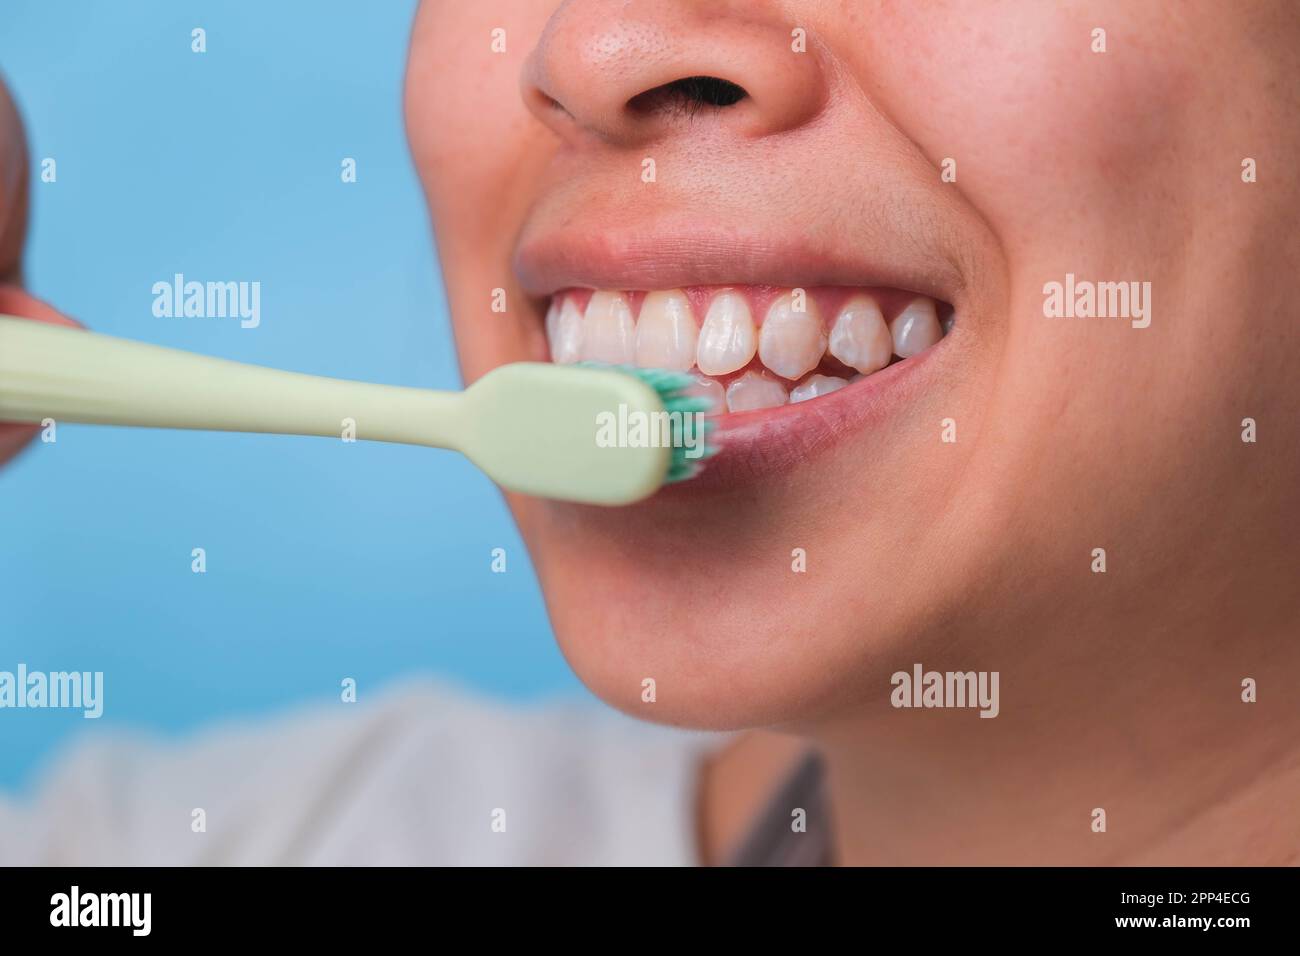 Glückliche Asiatin, die sich um ihre Zähne kümmert und eine Zahnbürste in der Hand hält. Junge Dame putzt sich die Zähne. Zahnpflege und Mundhygienekonzept. Stockfoto